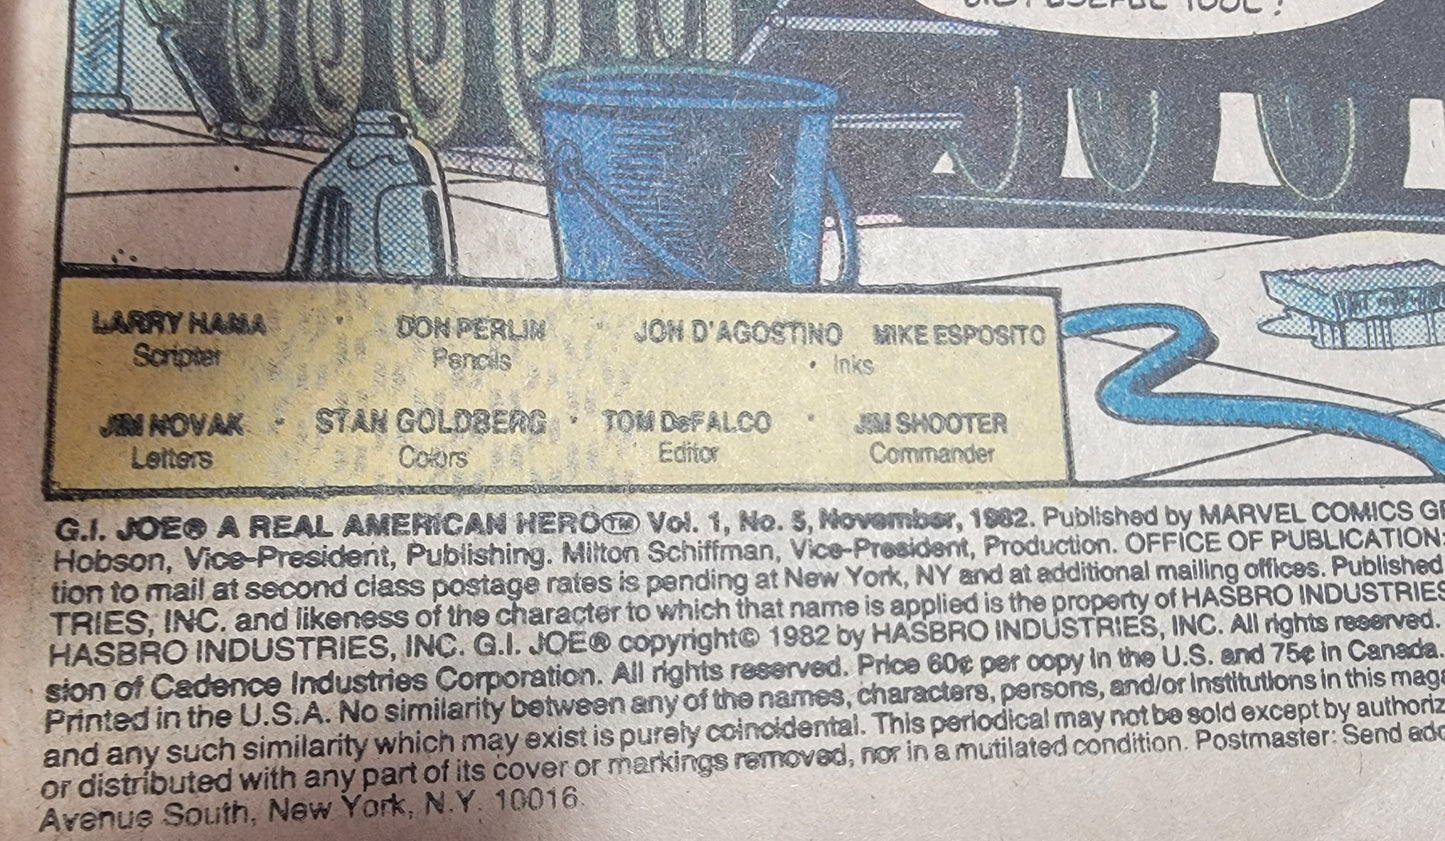 G.i.joe  a real American hero comic # 5 (1982)